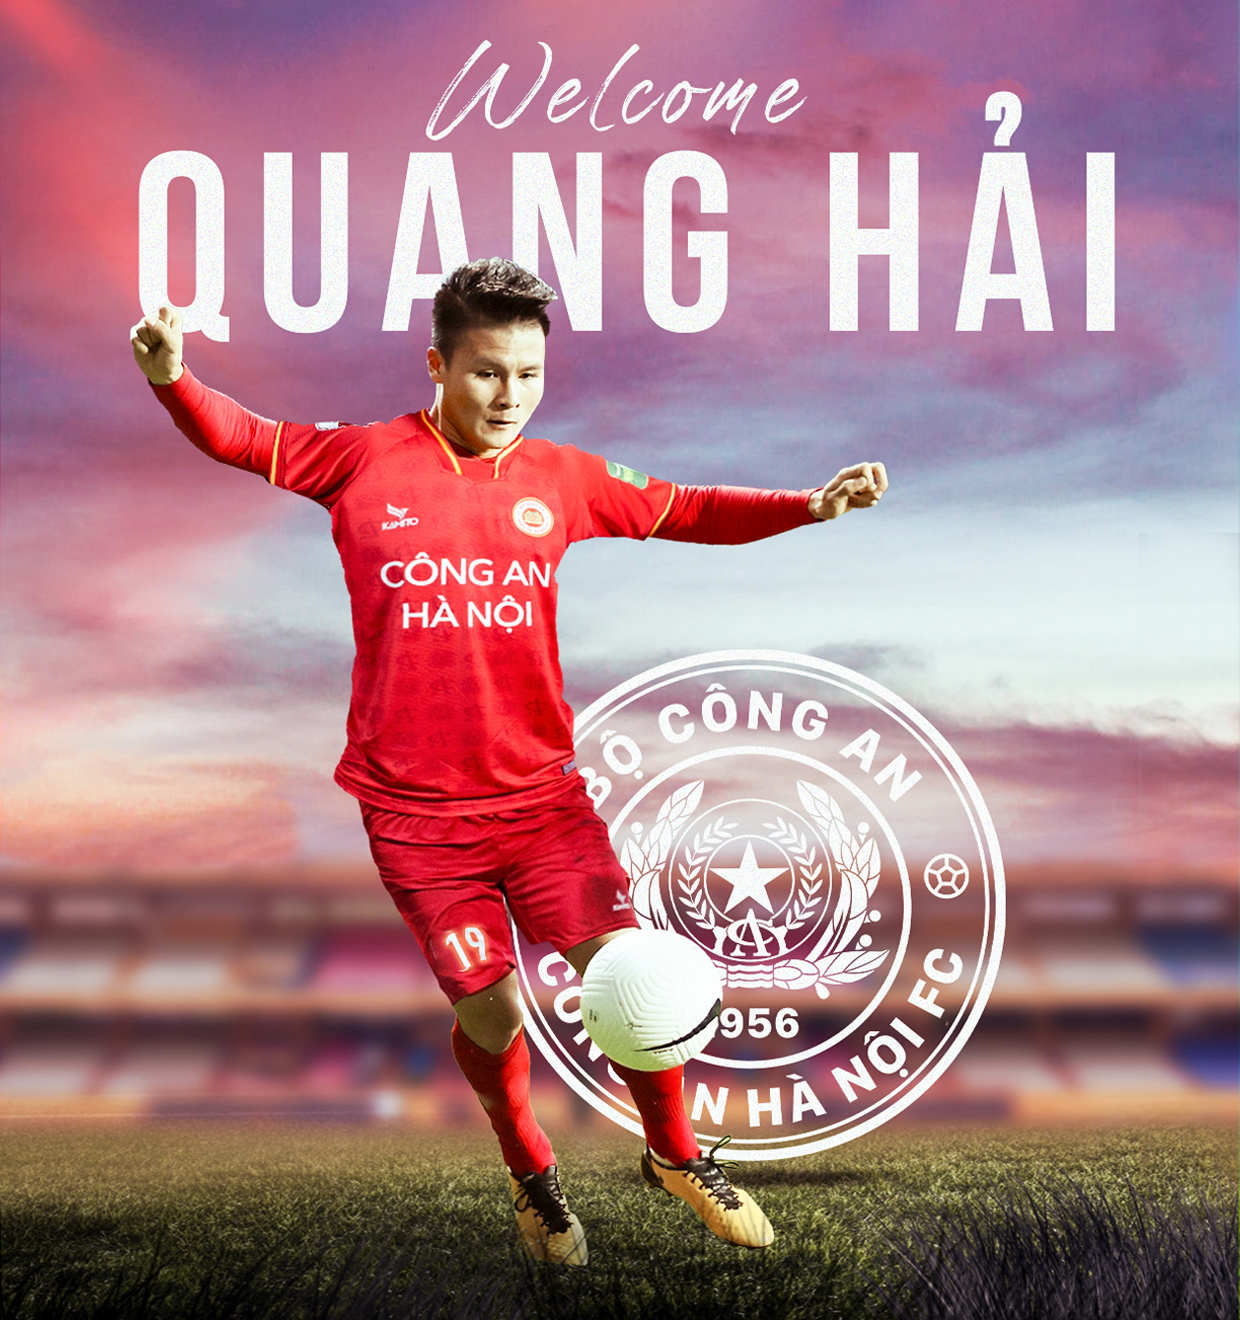 Tiền vệ Quang Hải là bản hợp đồng “bom tấn” tại V.League trong kì chuyển nhượng giữa mùa giải. Ảnh: CAHN FC